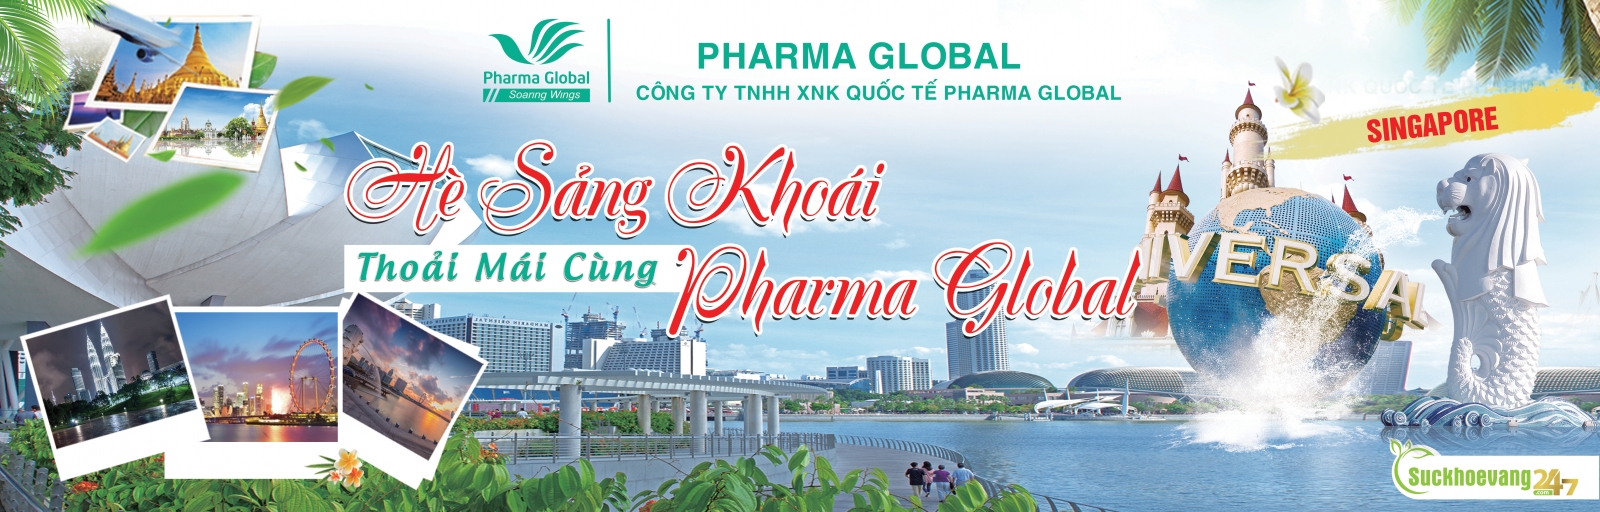 Pharma Global - Du lịch Singapore